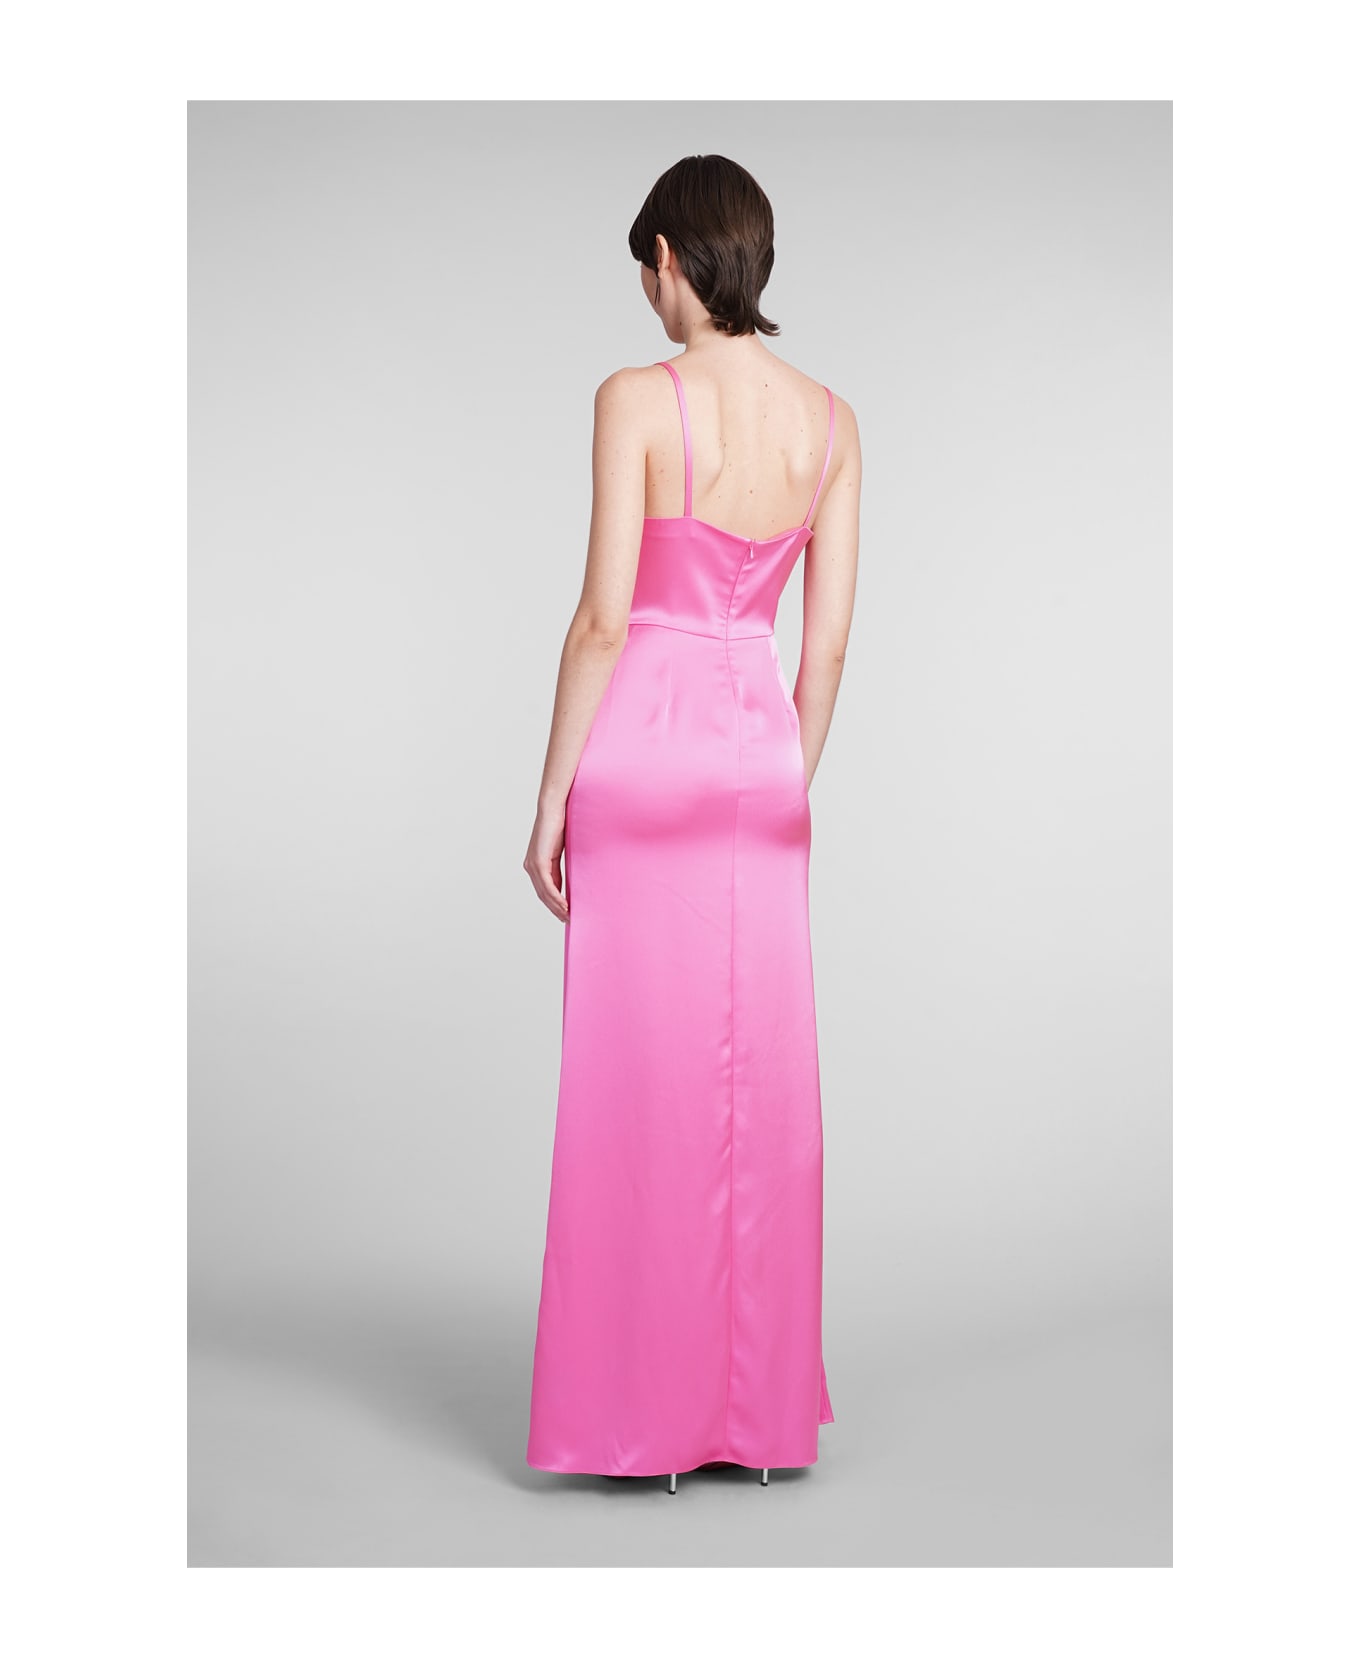 David Koma Dress In Rose-pink Acetate - rose-pink